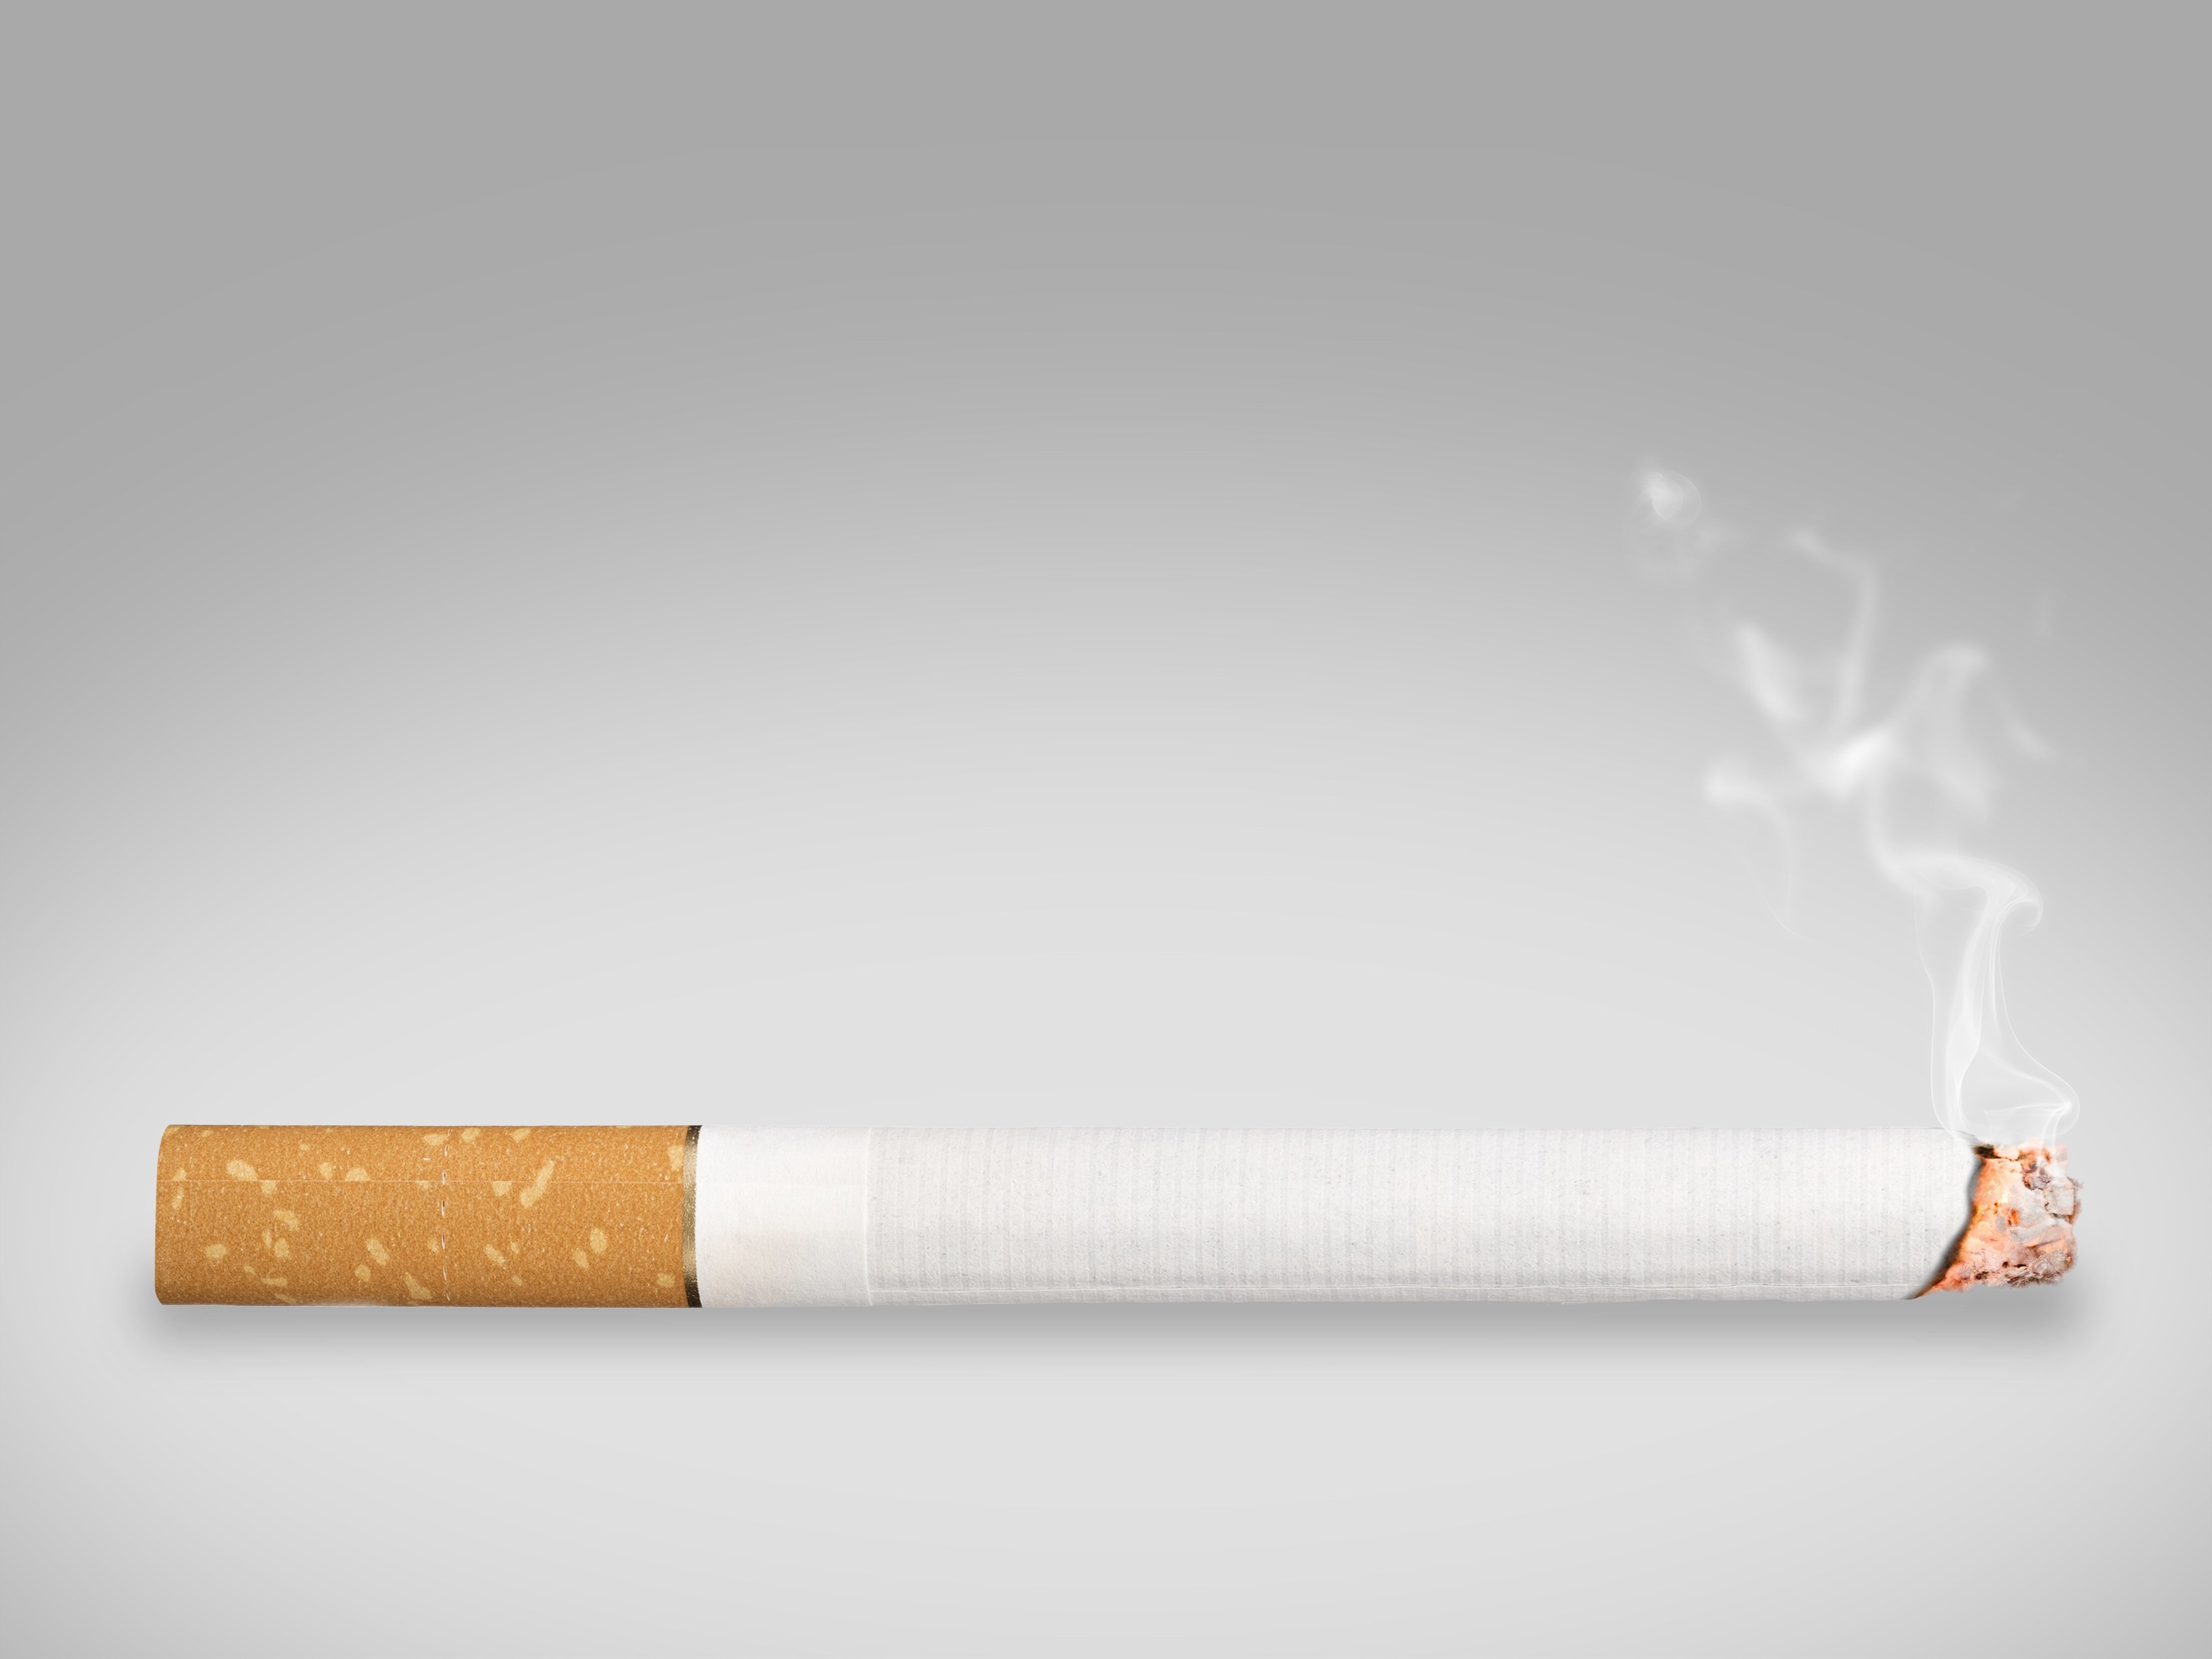 Вновь сигарета. Сигарета. Дымящаяся сигарета. Сигареты фон. Изображение сигареты.